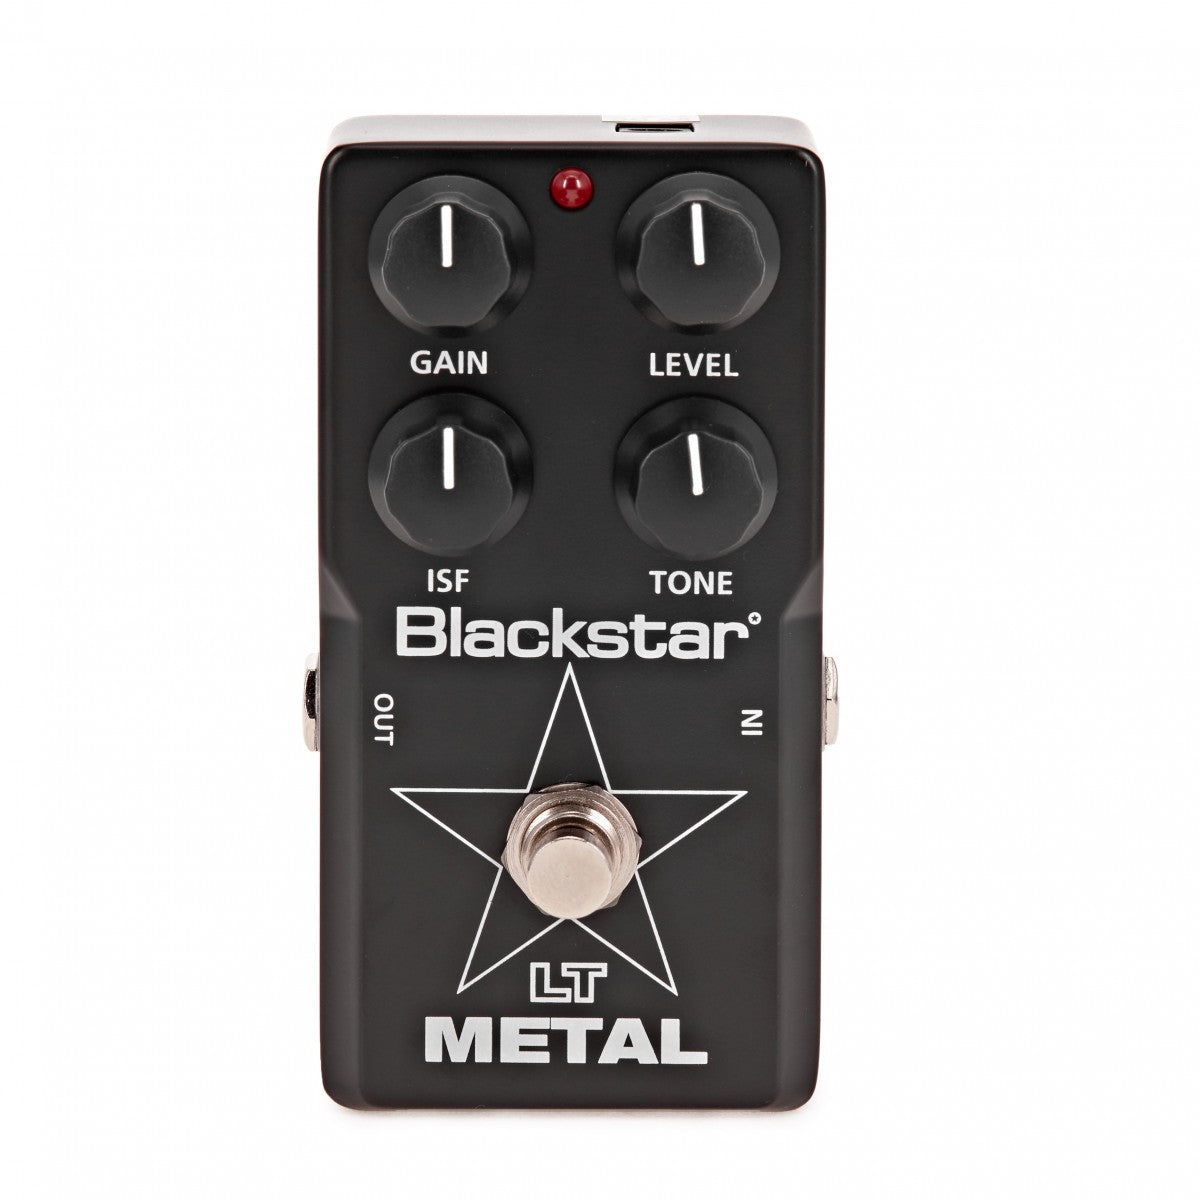 Blackstar LT Metal Guitar Pedal